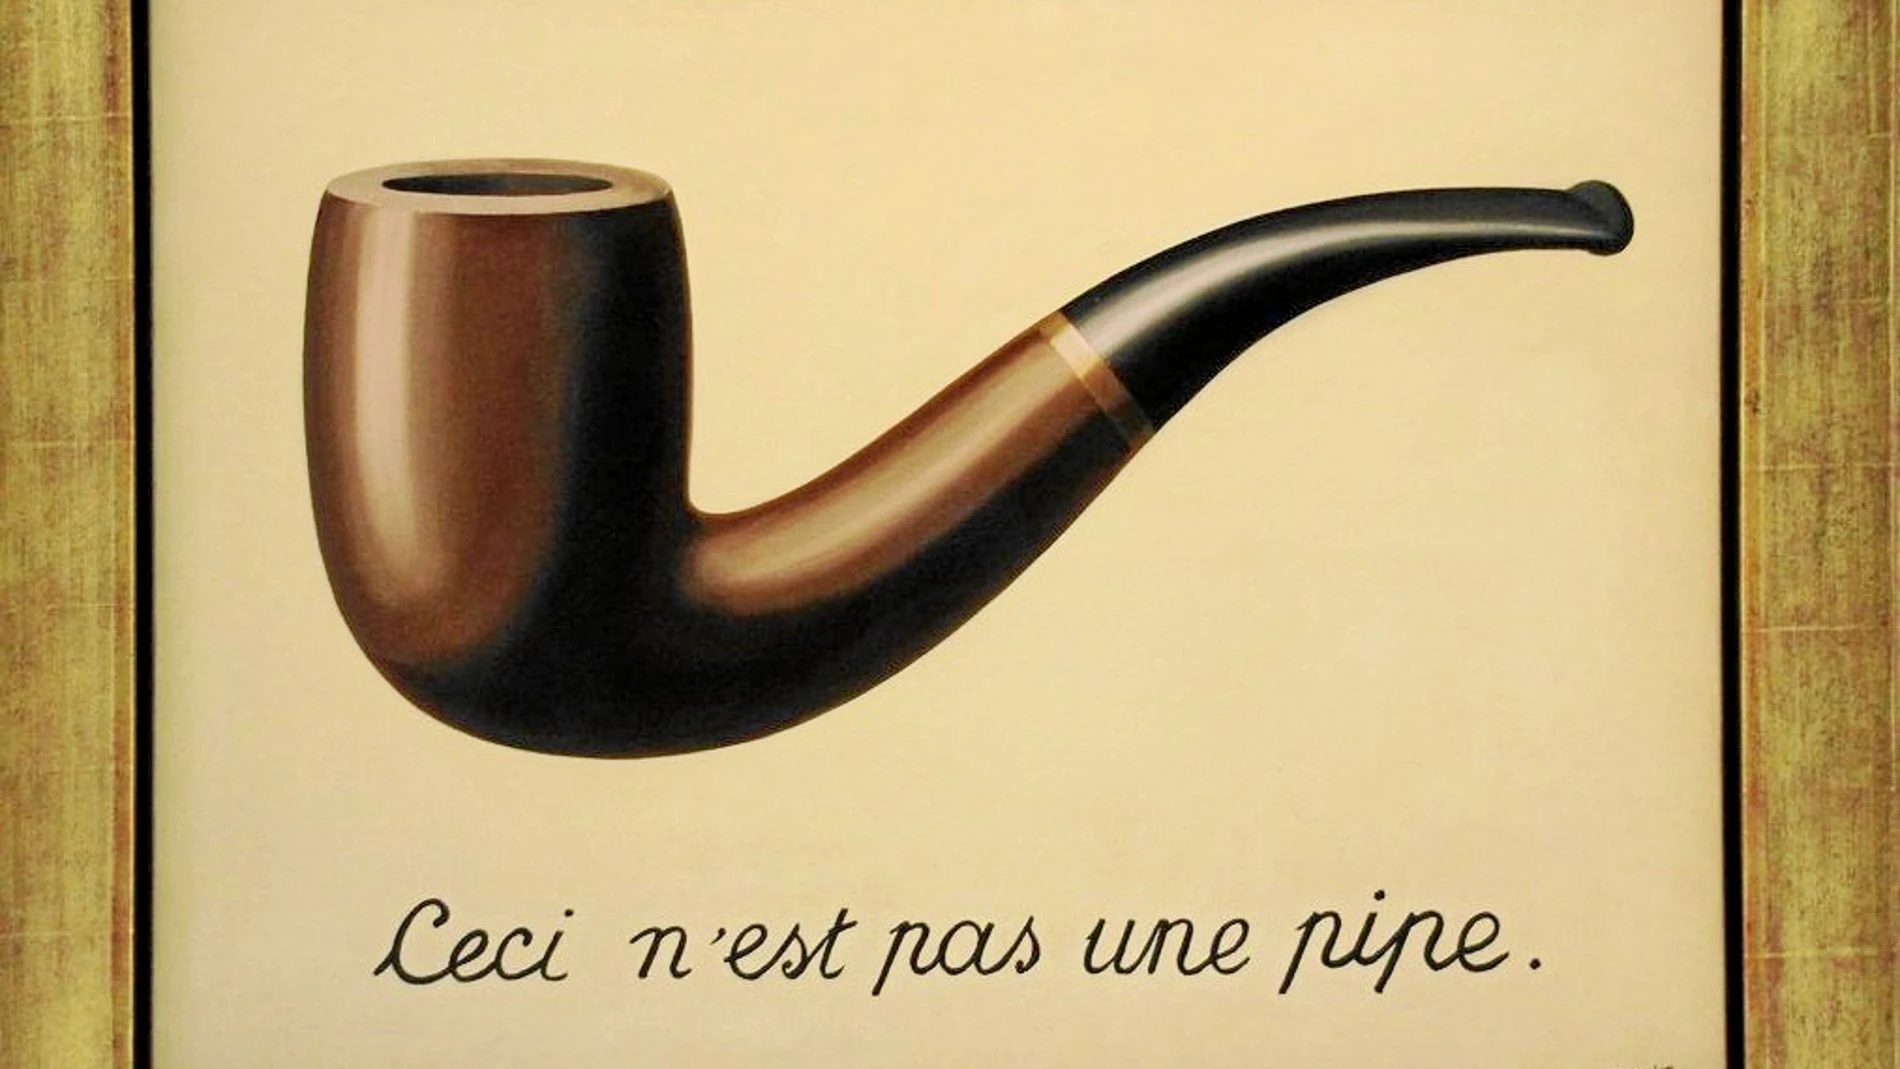 Con Magritte, como con las encuestas, siempre hay un doble sentido más profundo que no se aprecia a simple vista